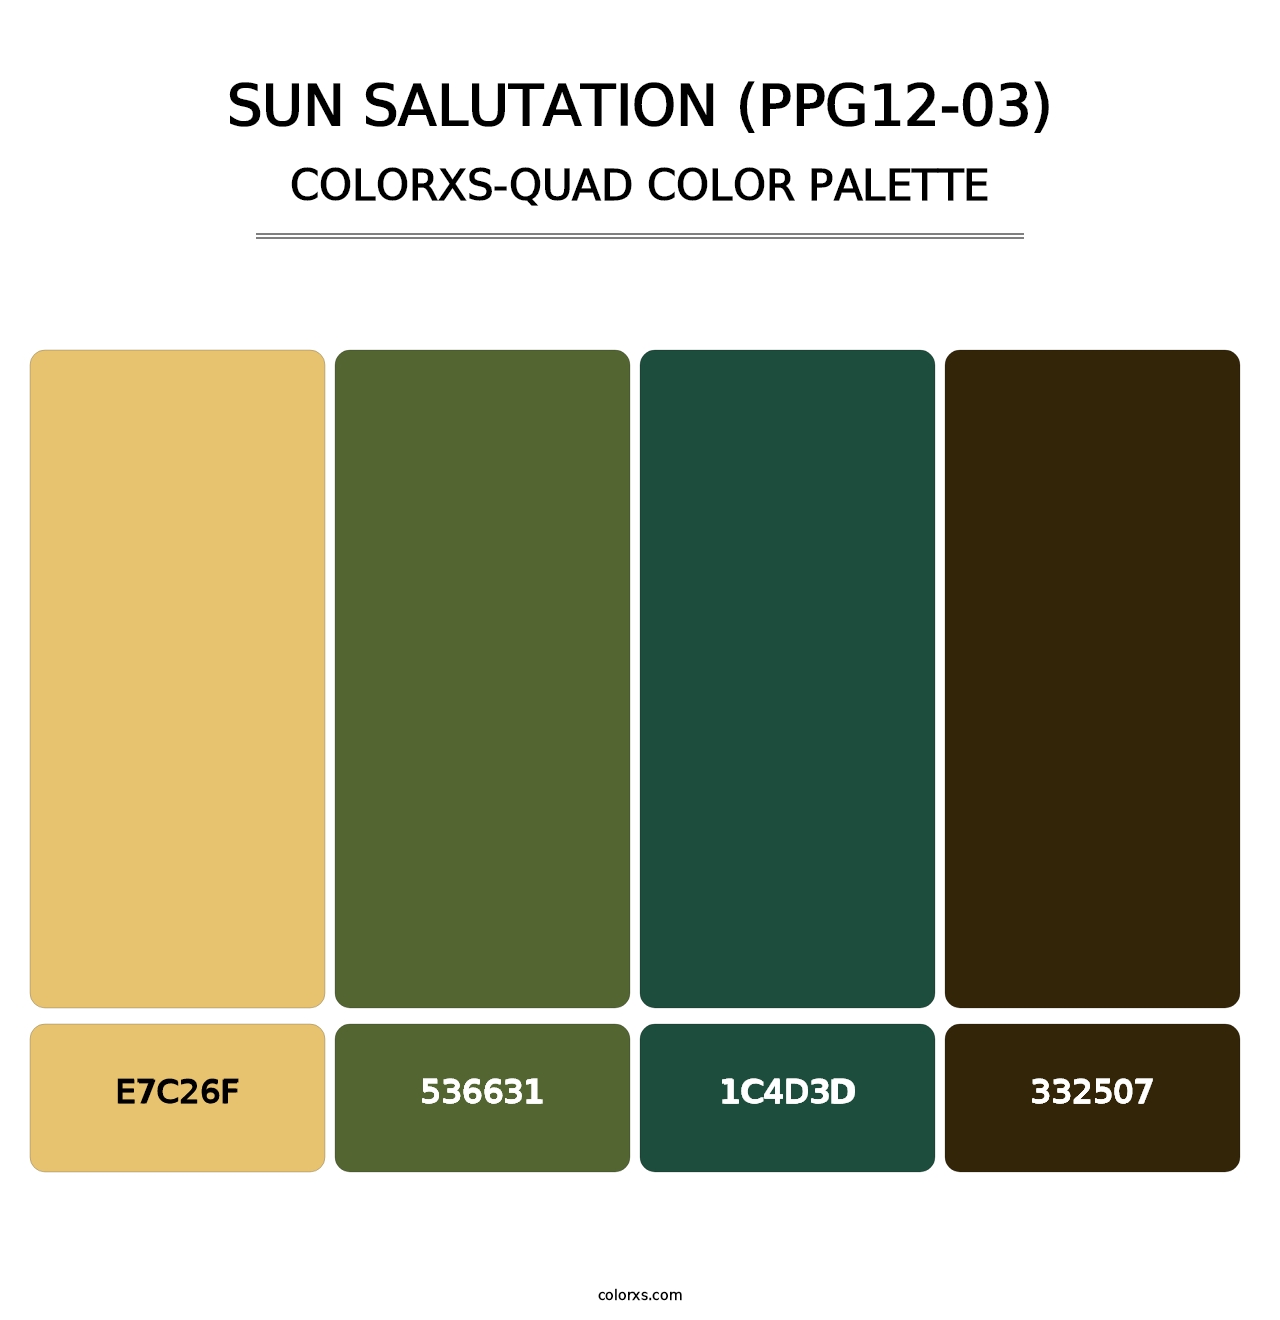 Sun Salutation (PPG12-03) - Colorxs Quad Palette